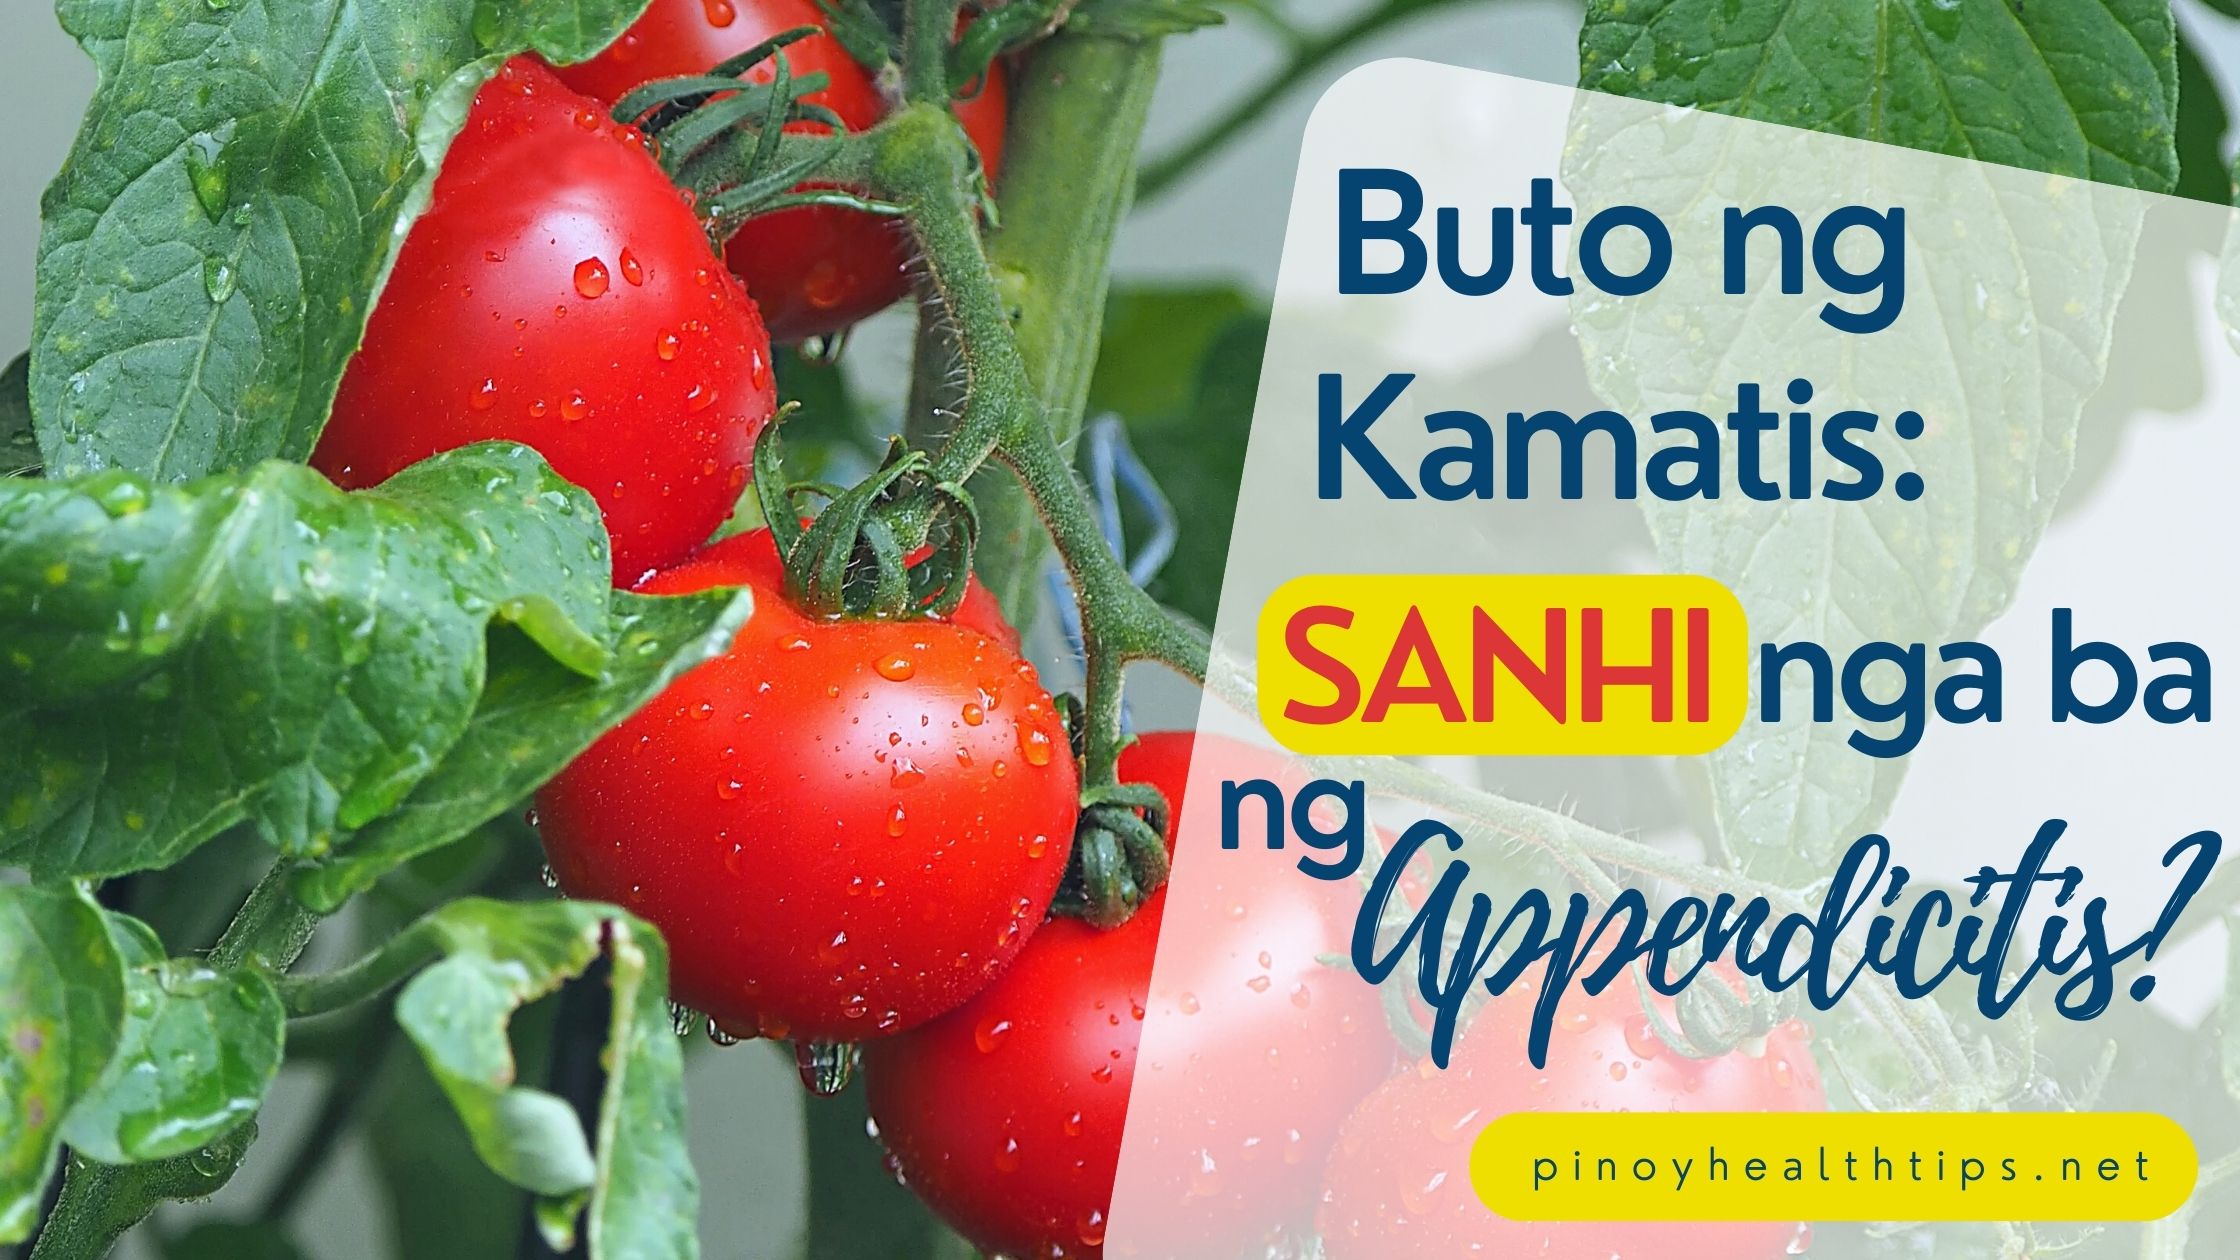 Buto ng Kamatis: Sanhi nga ba ng Appendicitis? - Pinoy Health Tips